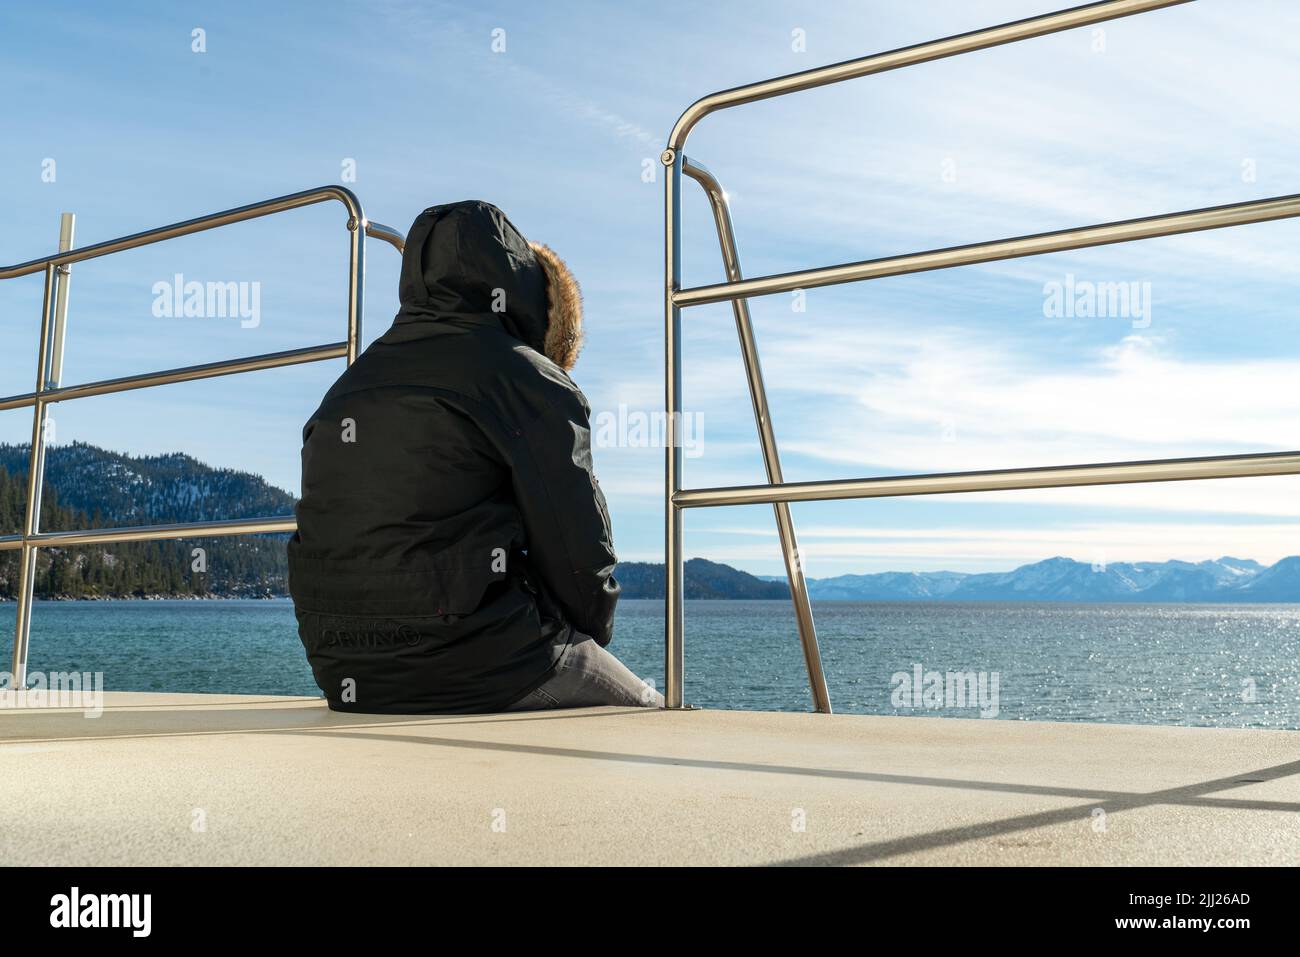 Der Rettungsschwimmer sitzt in einer warmen Kapuzenjacke auf dem Wachturm des Rettungsschwimmern am Strand und beobachtet das Meer bei kaltem Wetter Stockfoto